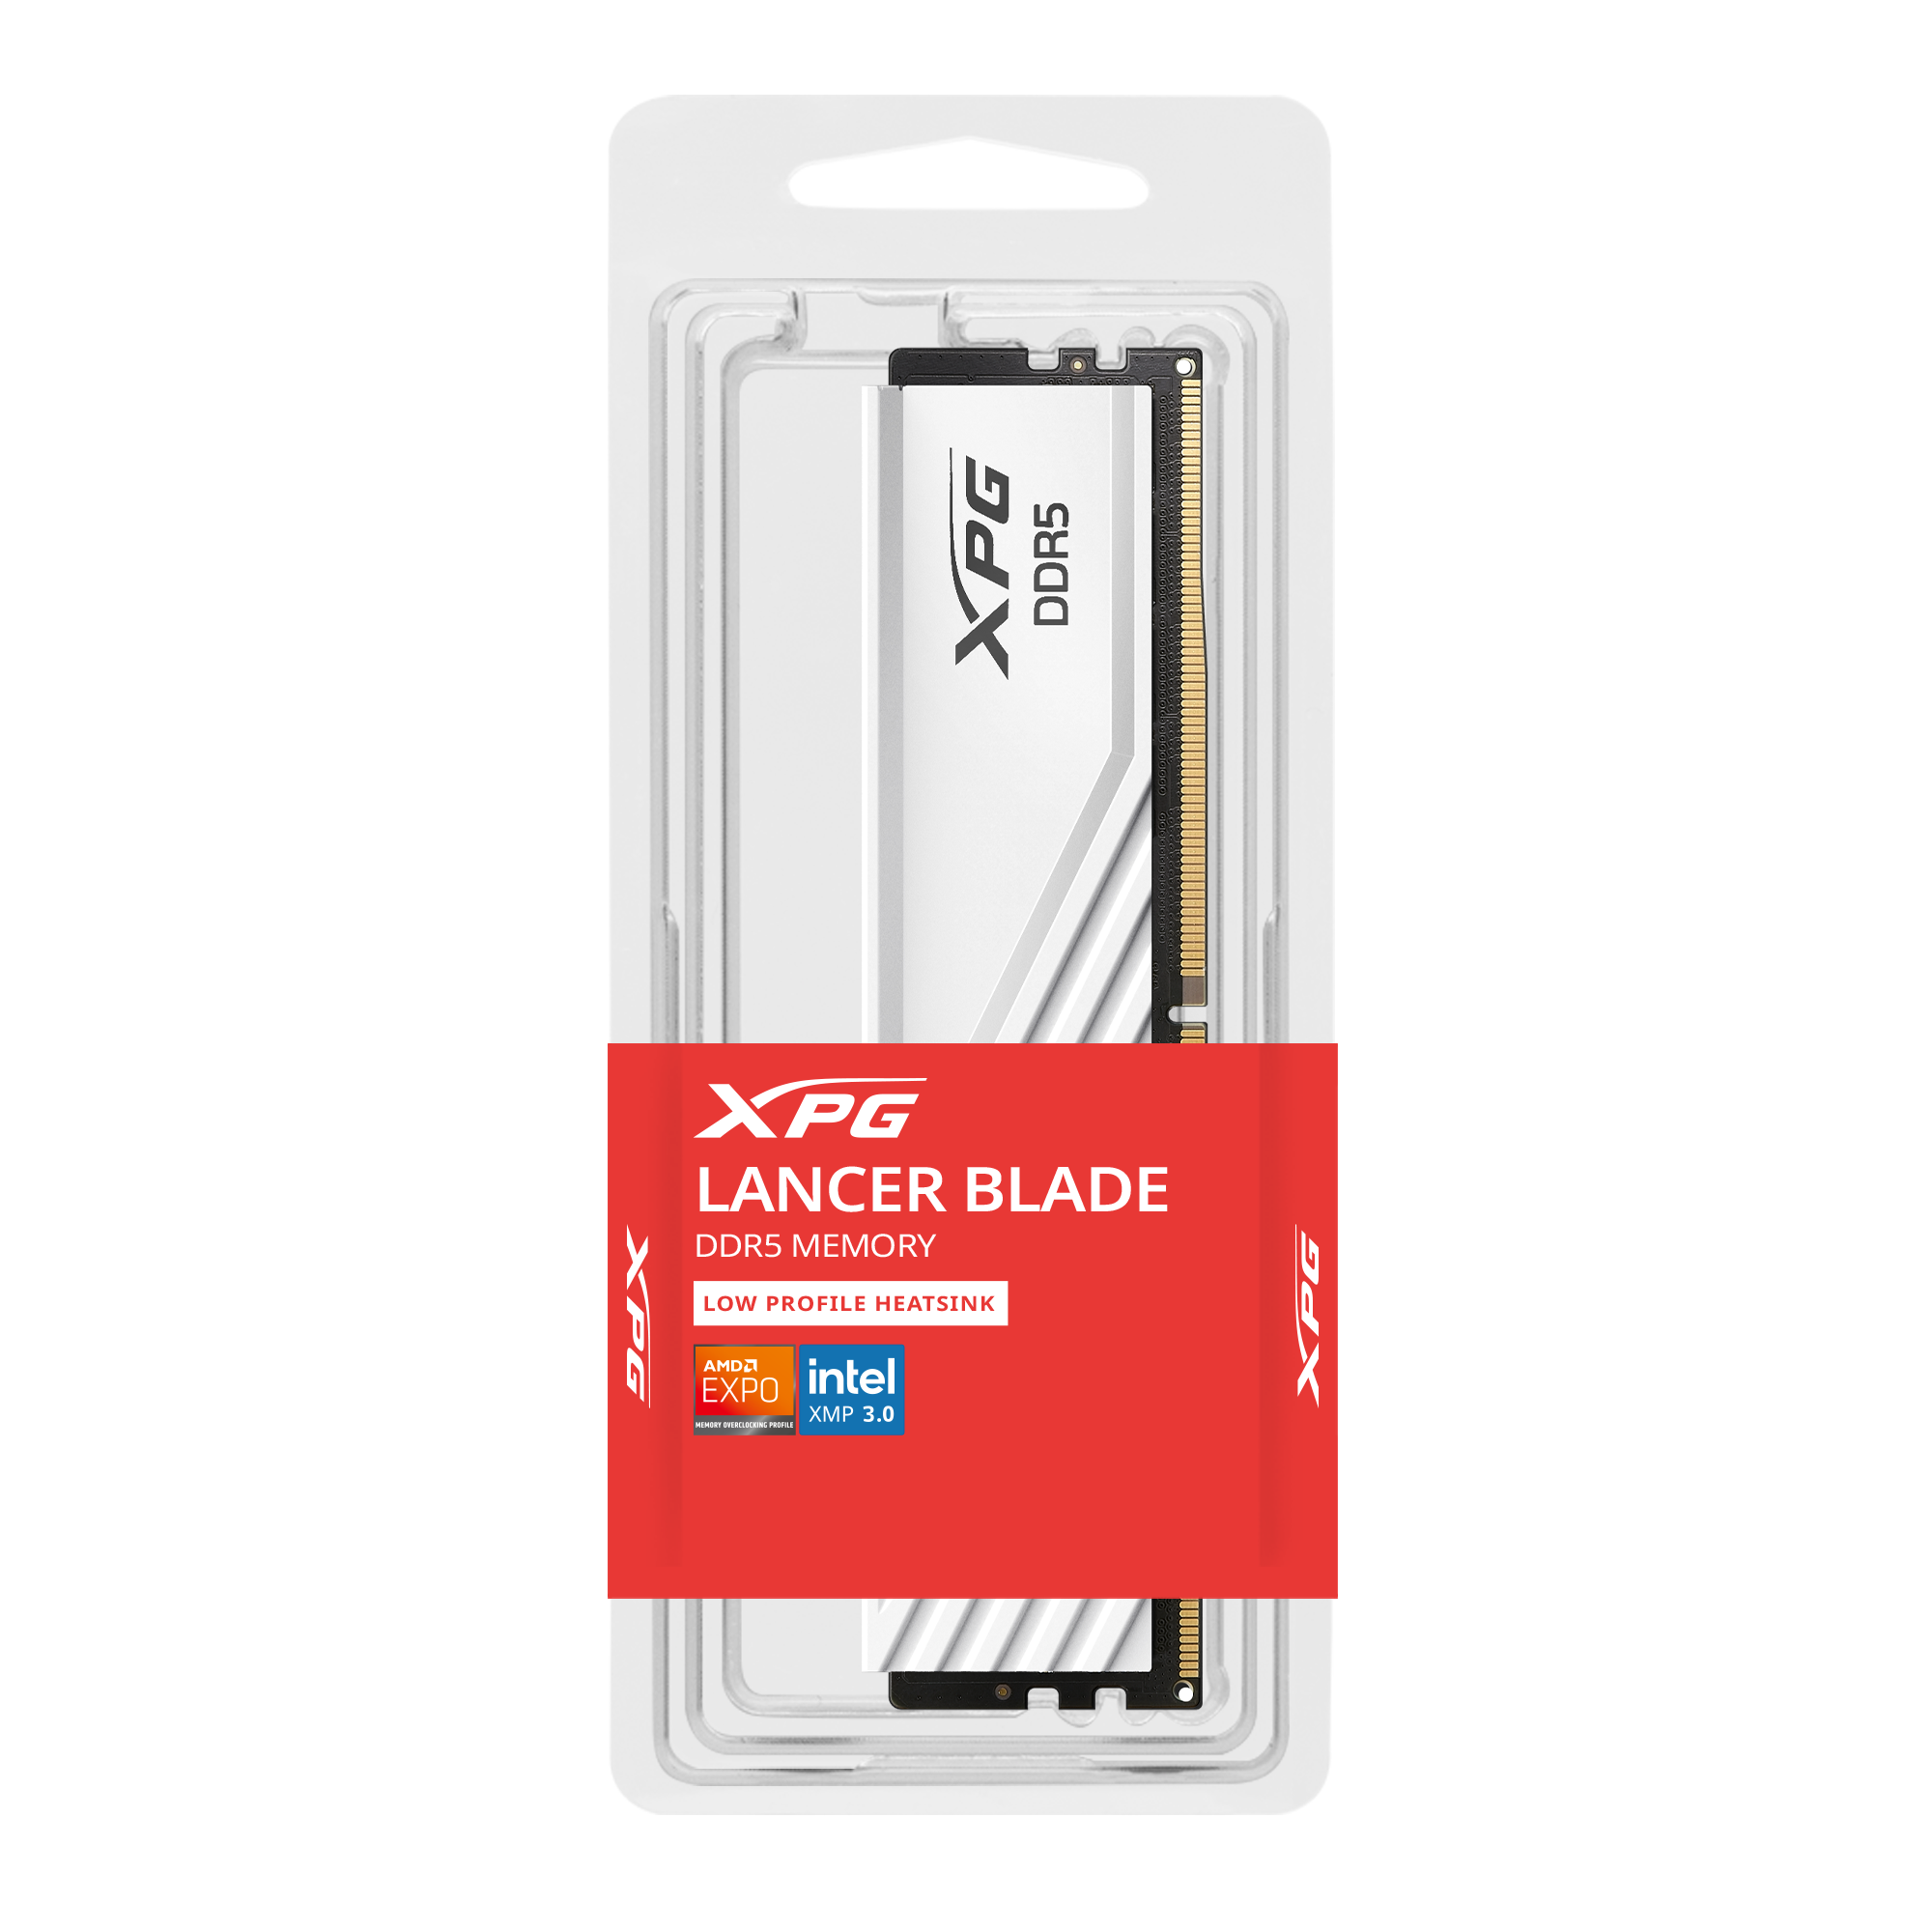 LANCER BLADE DDR5 Memory | XPG